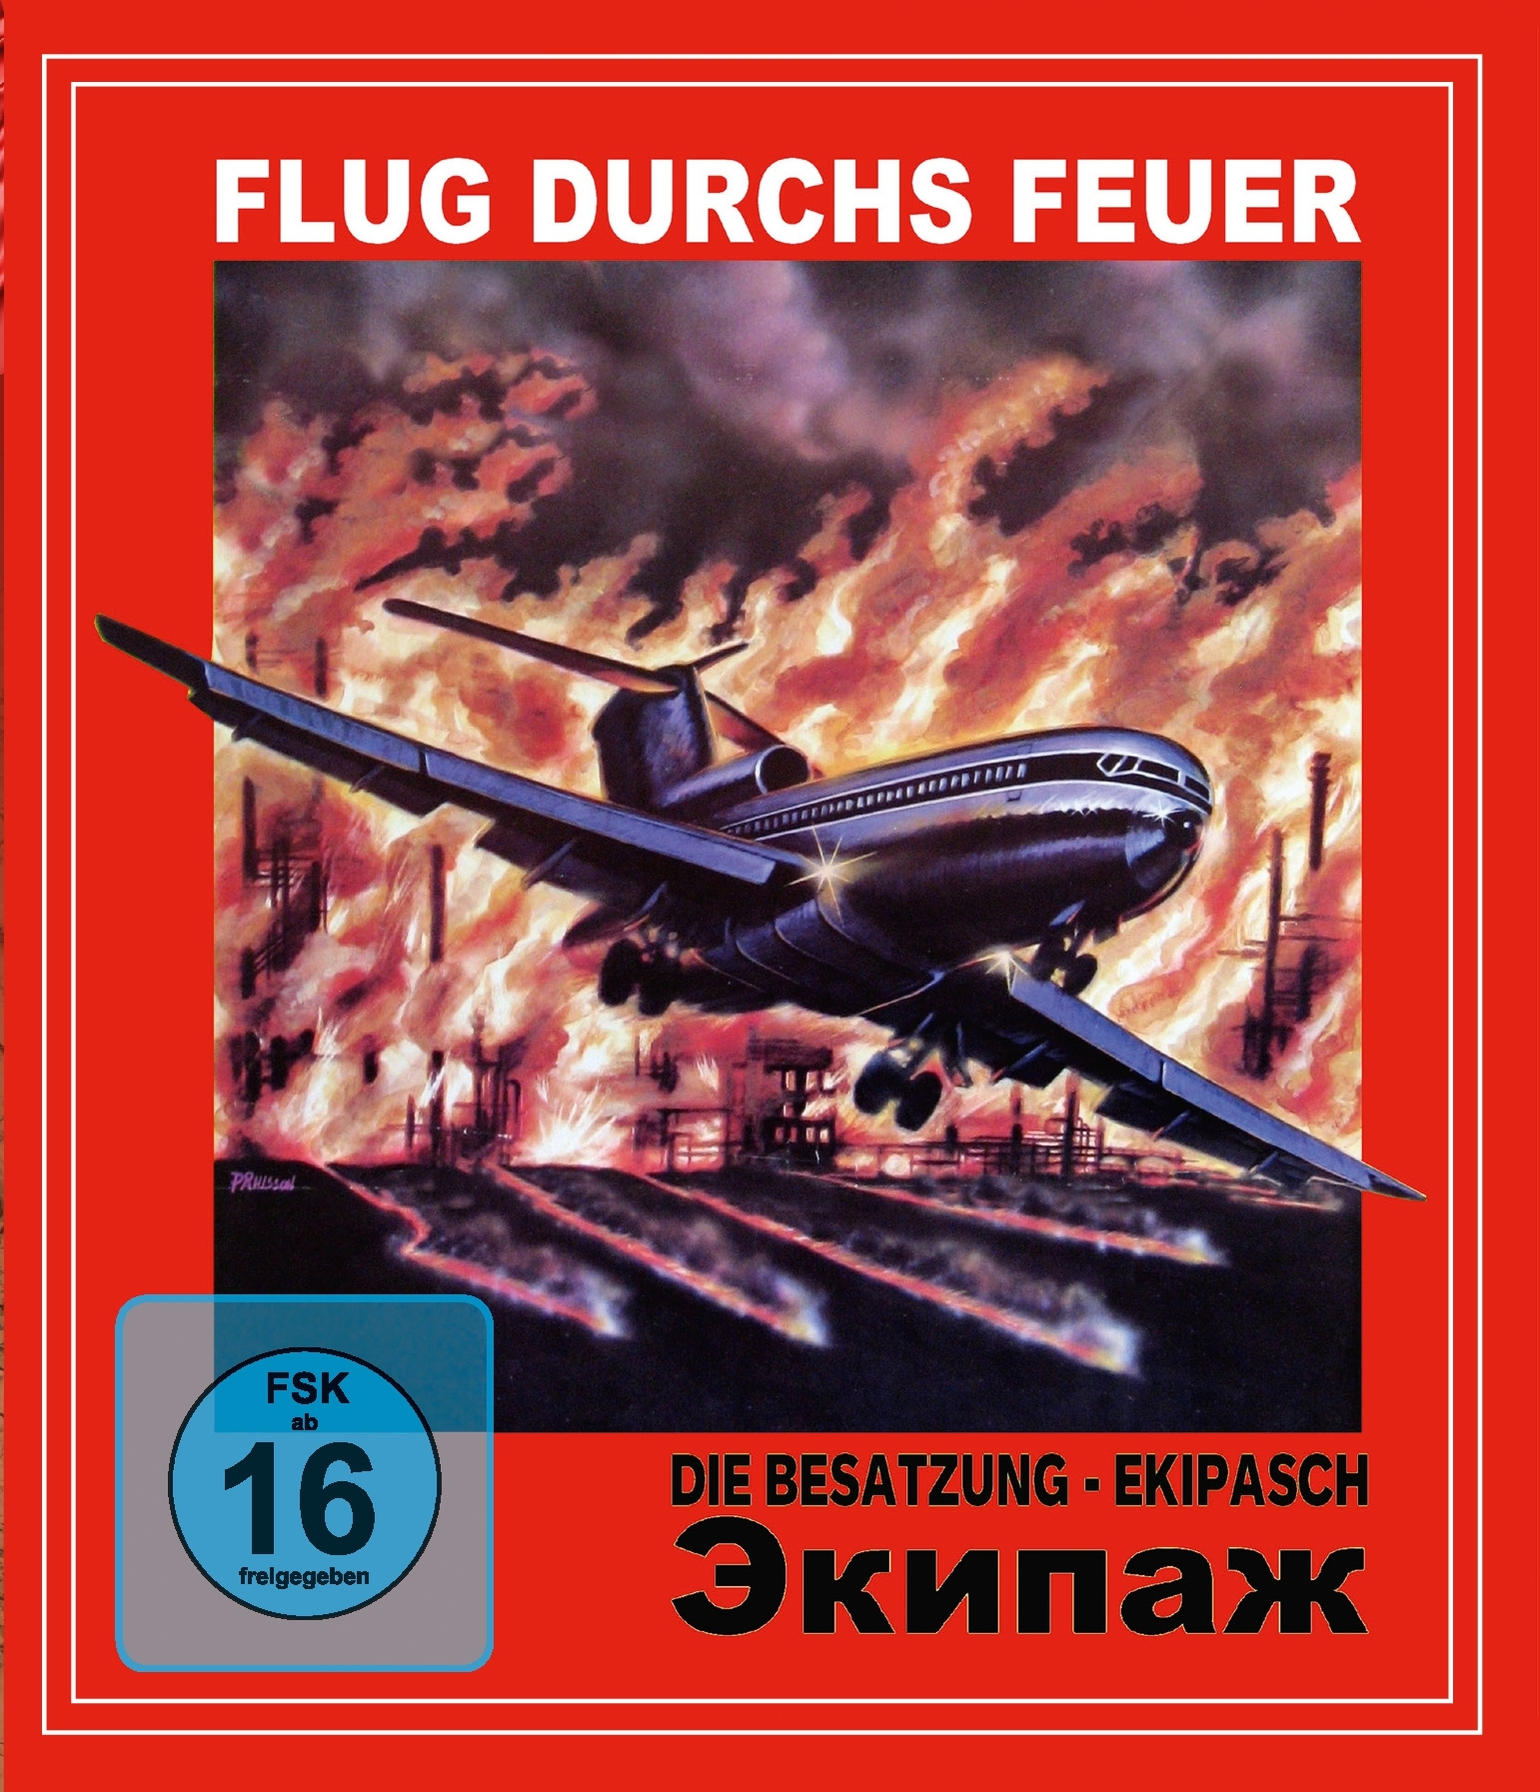 Flug (a.k.a. Blu-ray Die Besatzung) durchs Feuer